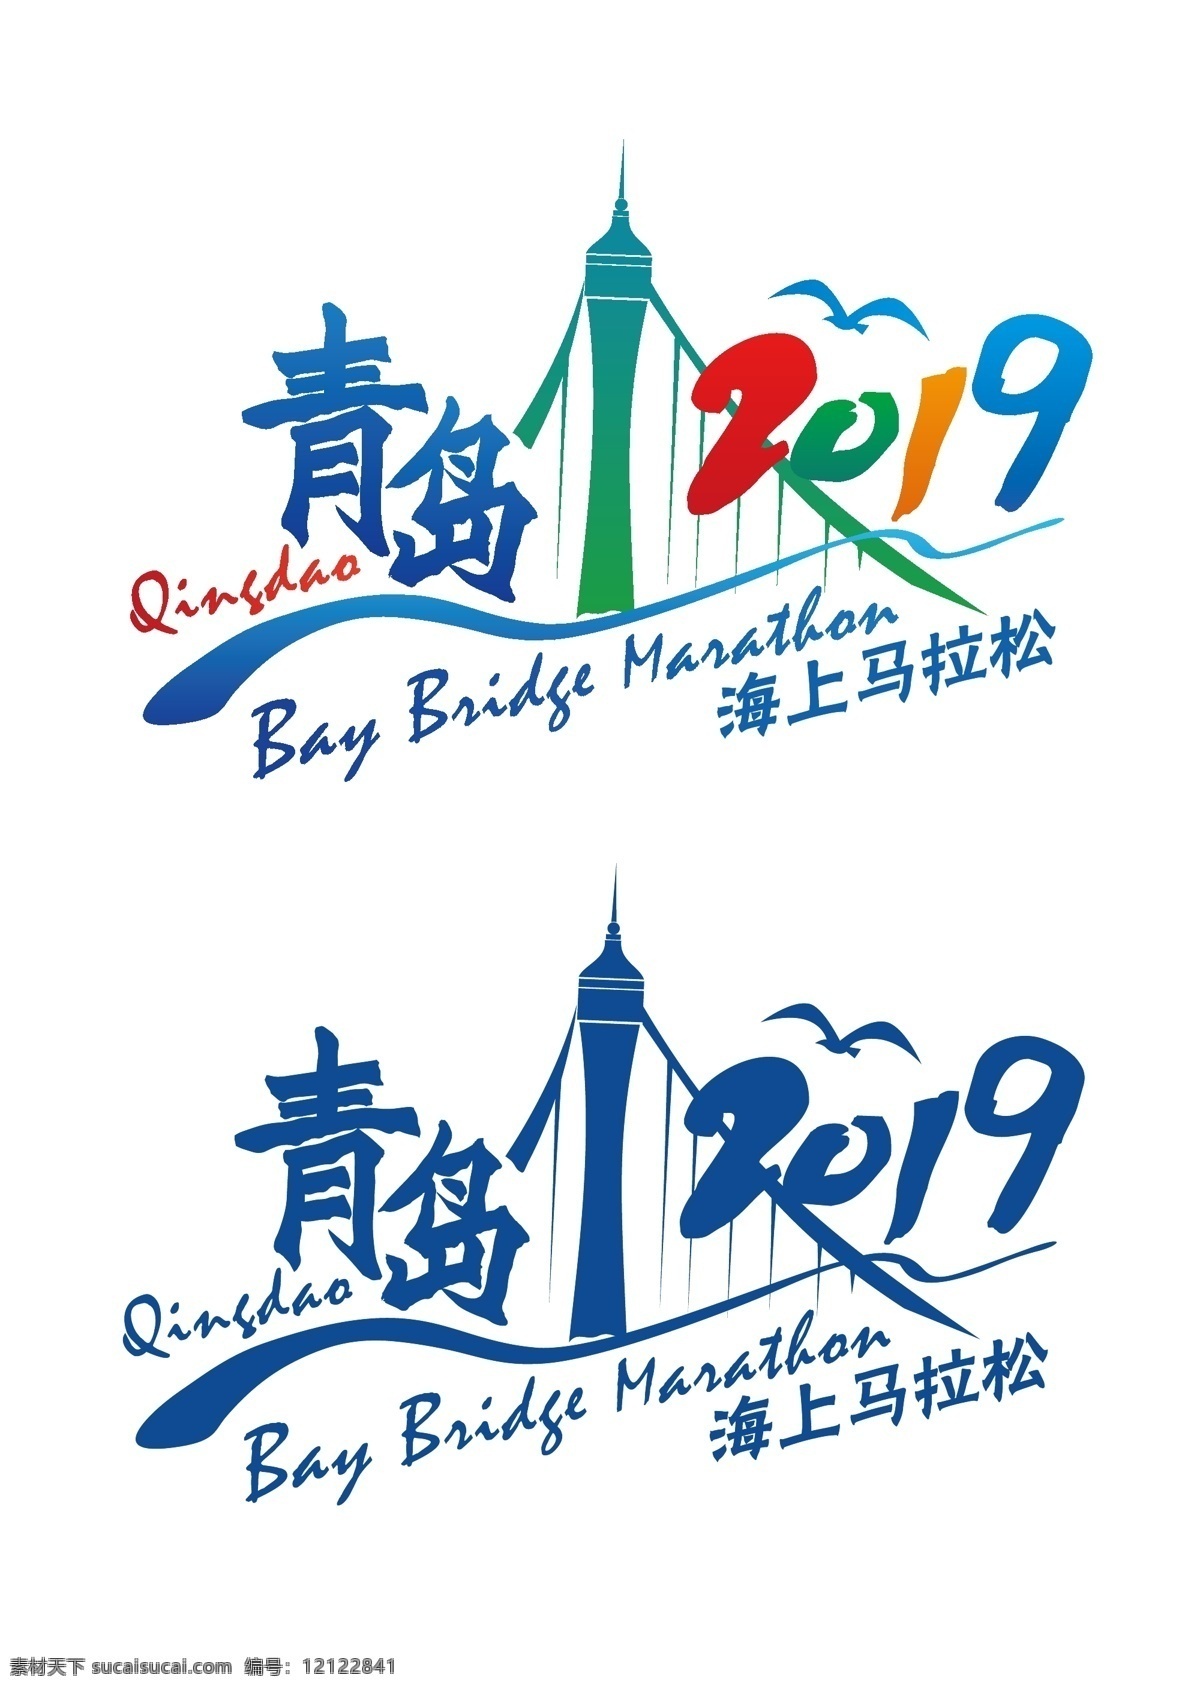 马拉松 logo 矢量图 标志 logo设计